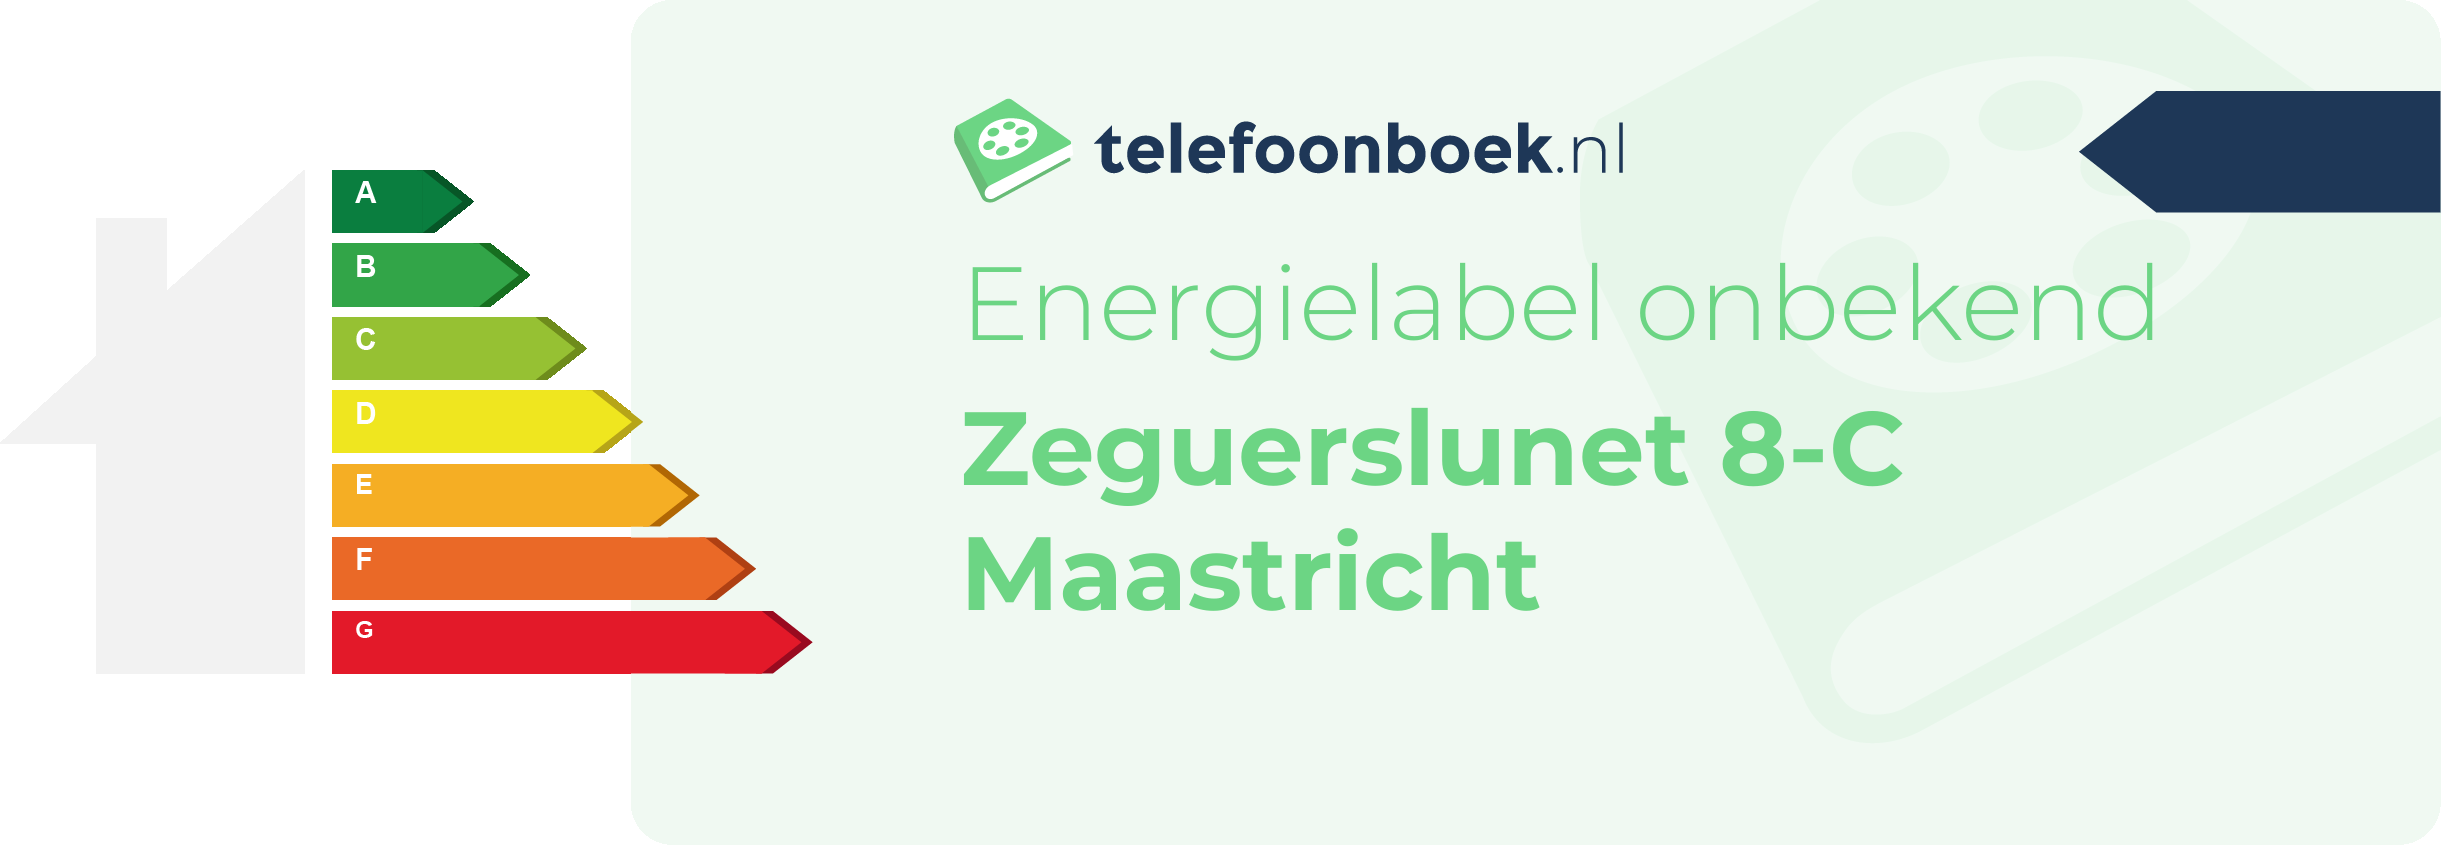 Energielabel Zeguerslunet 8-C Maastricht